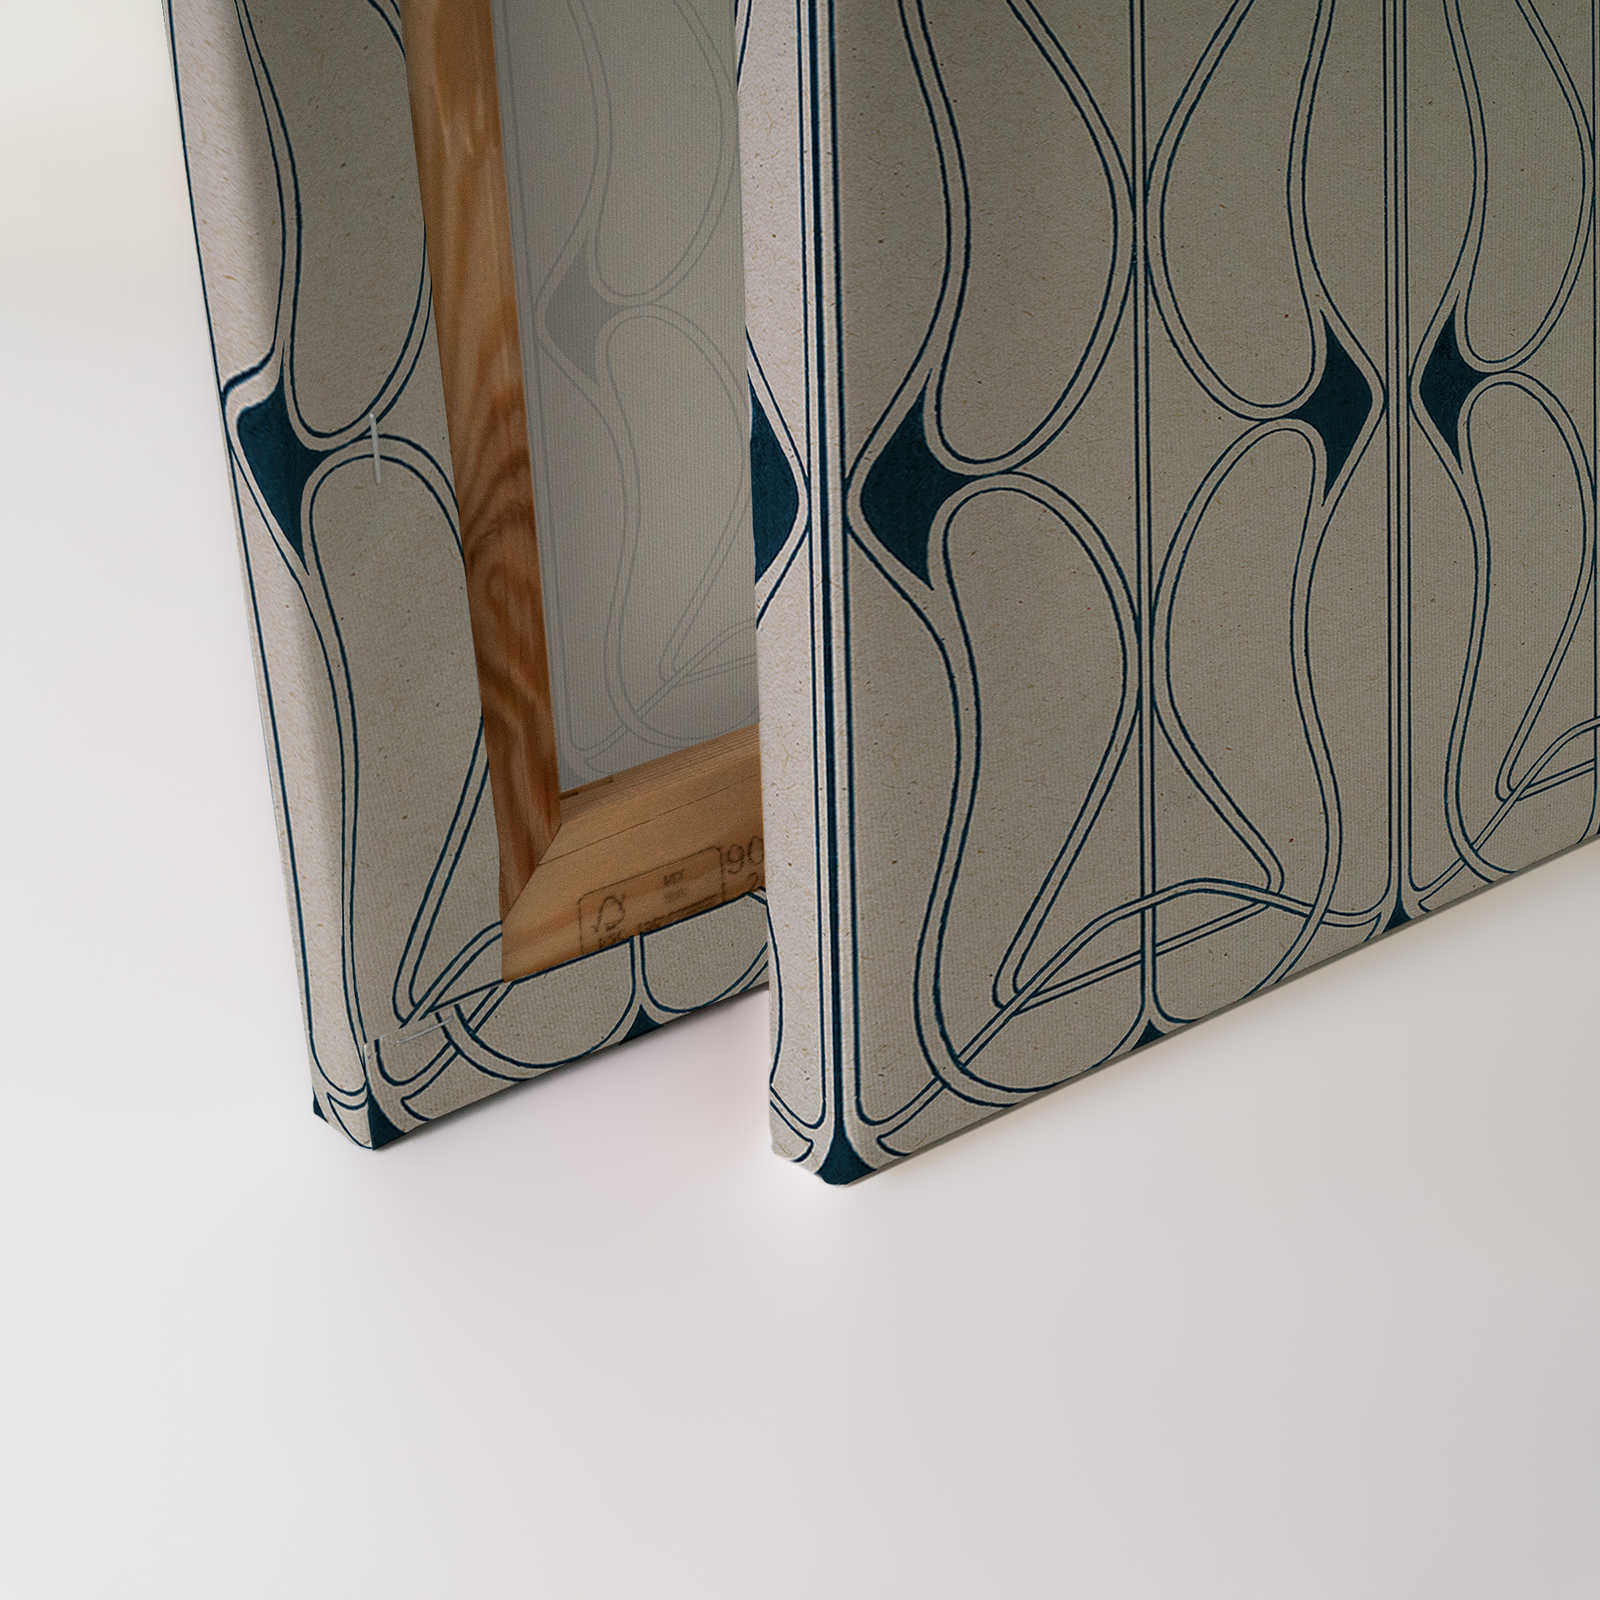             Astoria 1 - Toile Art Nouveau Motif Gris & Bleu Noir - 1,20 m x 0,80 m
        